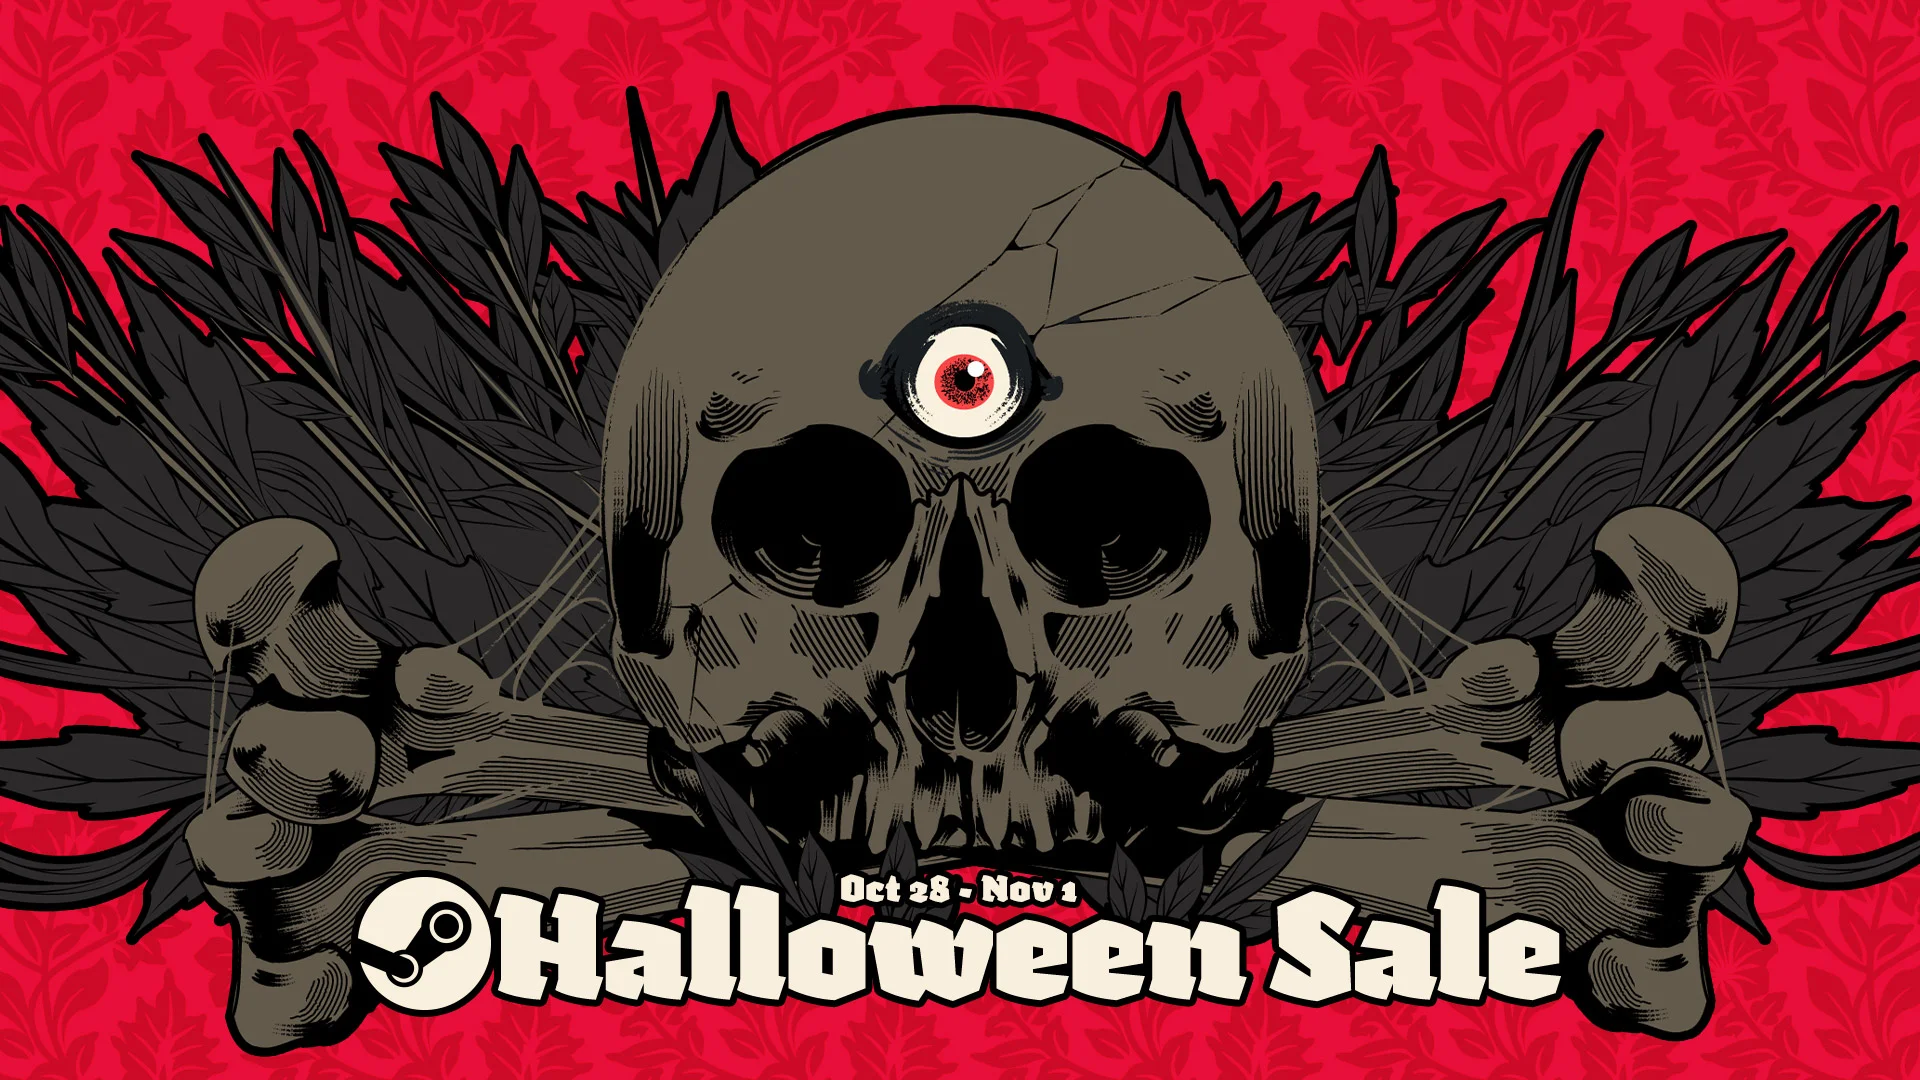 В Steam с 28 октября по 1 ноября пройдет распродажа в честь Хеллоуина - фото 1